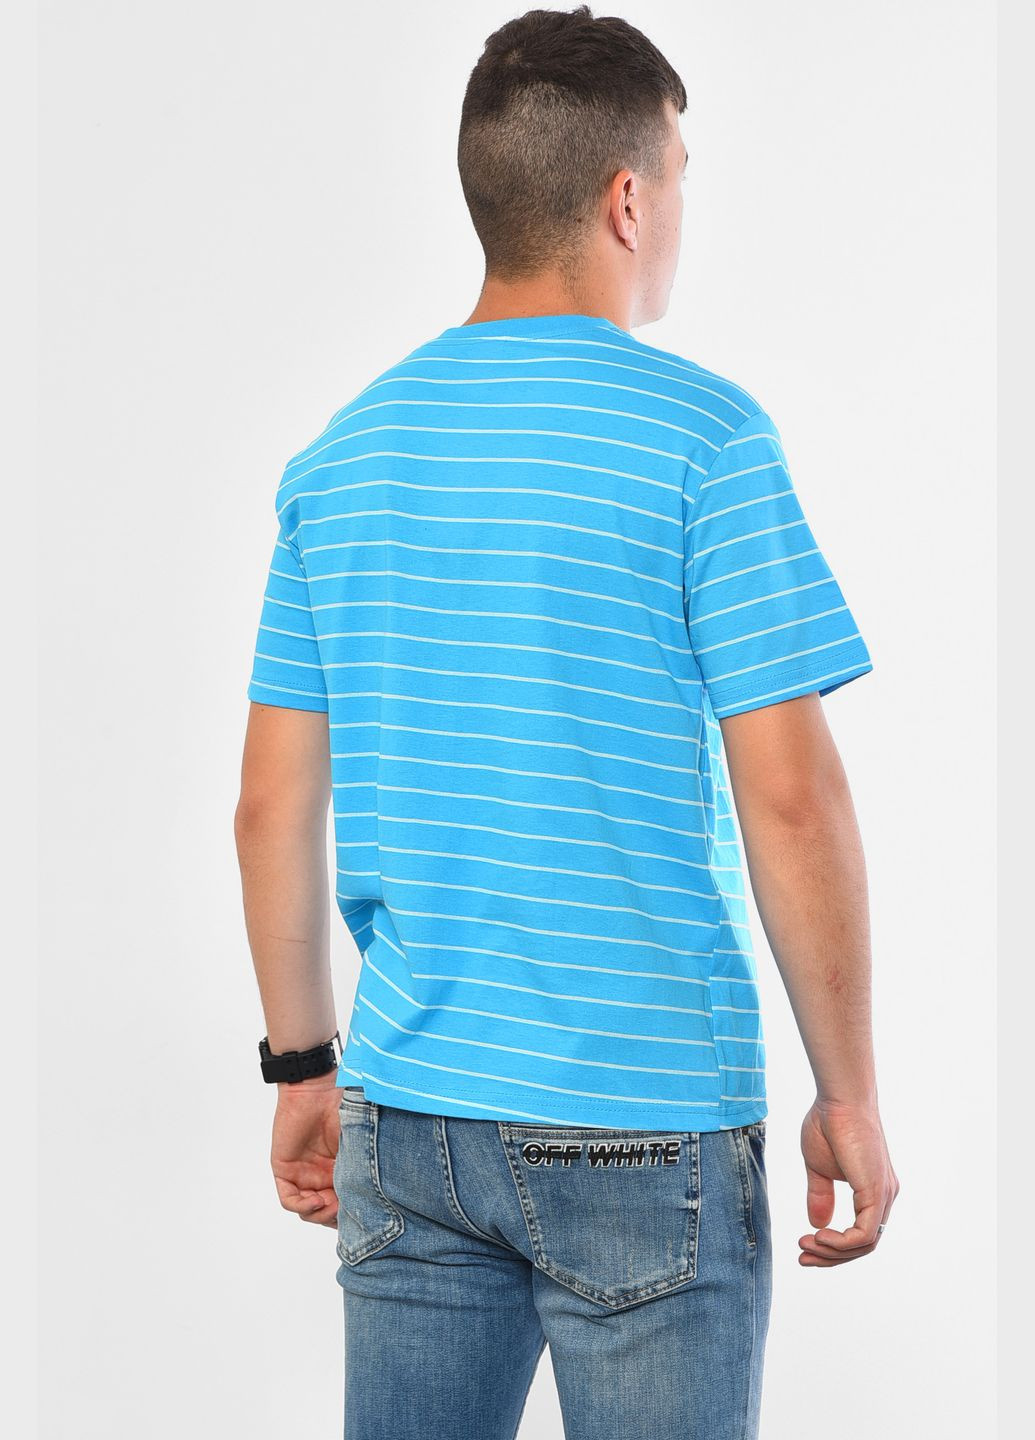 Голубая футболка мужская в полоску голубого цвета Let's Shop